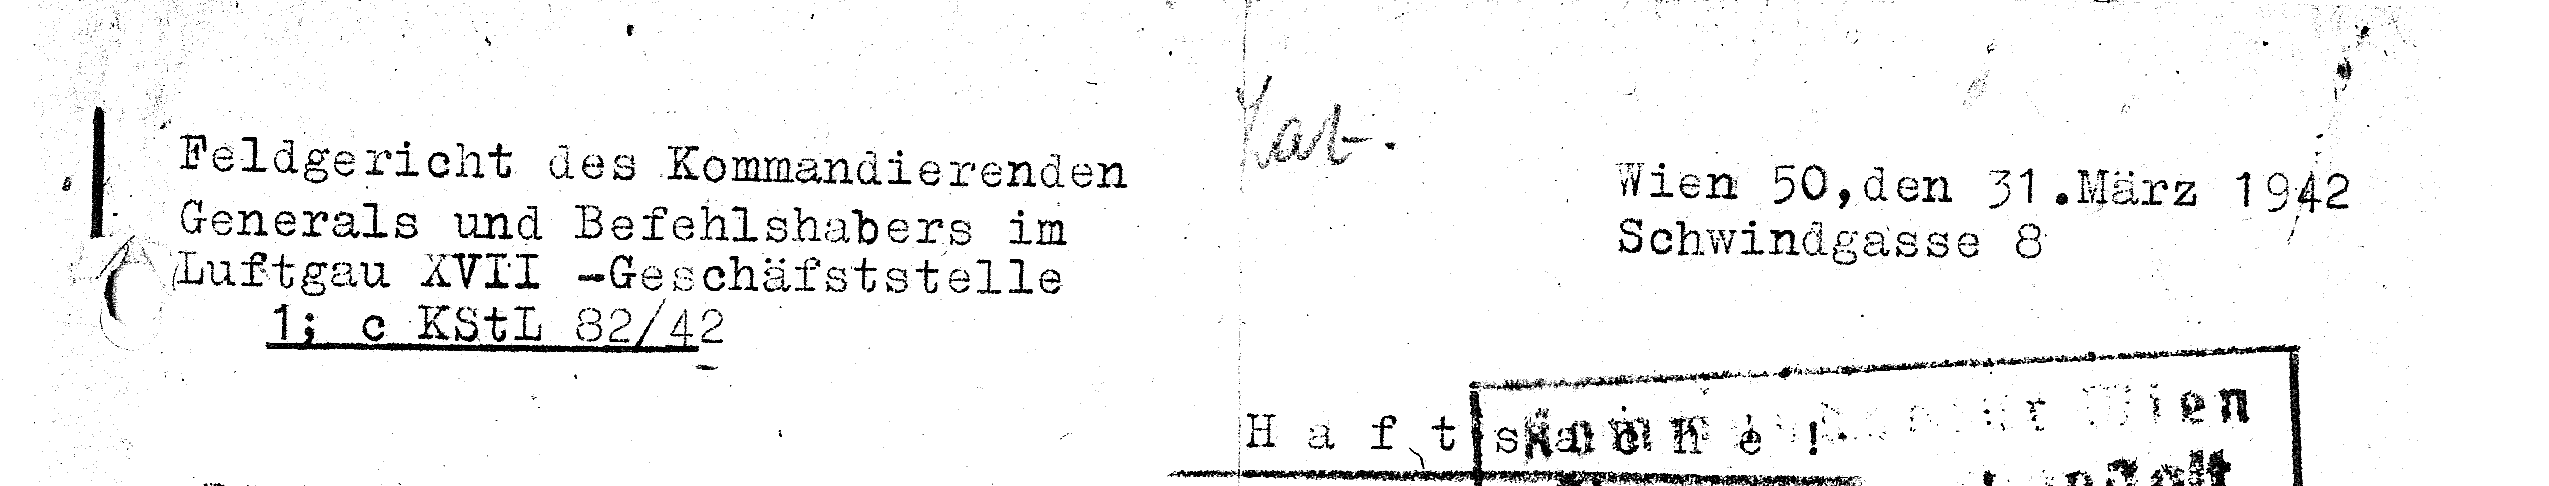 Briefkopf eines Schreibens des Gerichts des Luftgaus an eine Wiener Haftanstalt, 1942 (Quelle: DÖW)